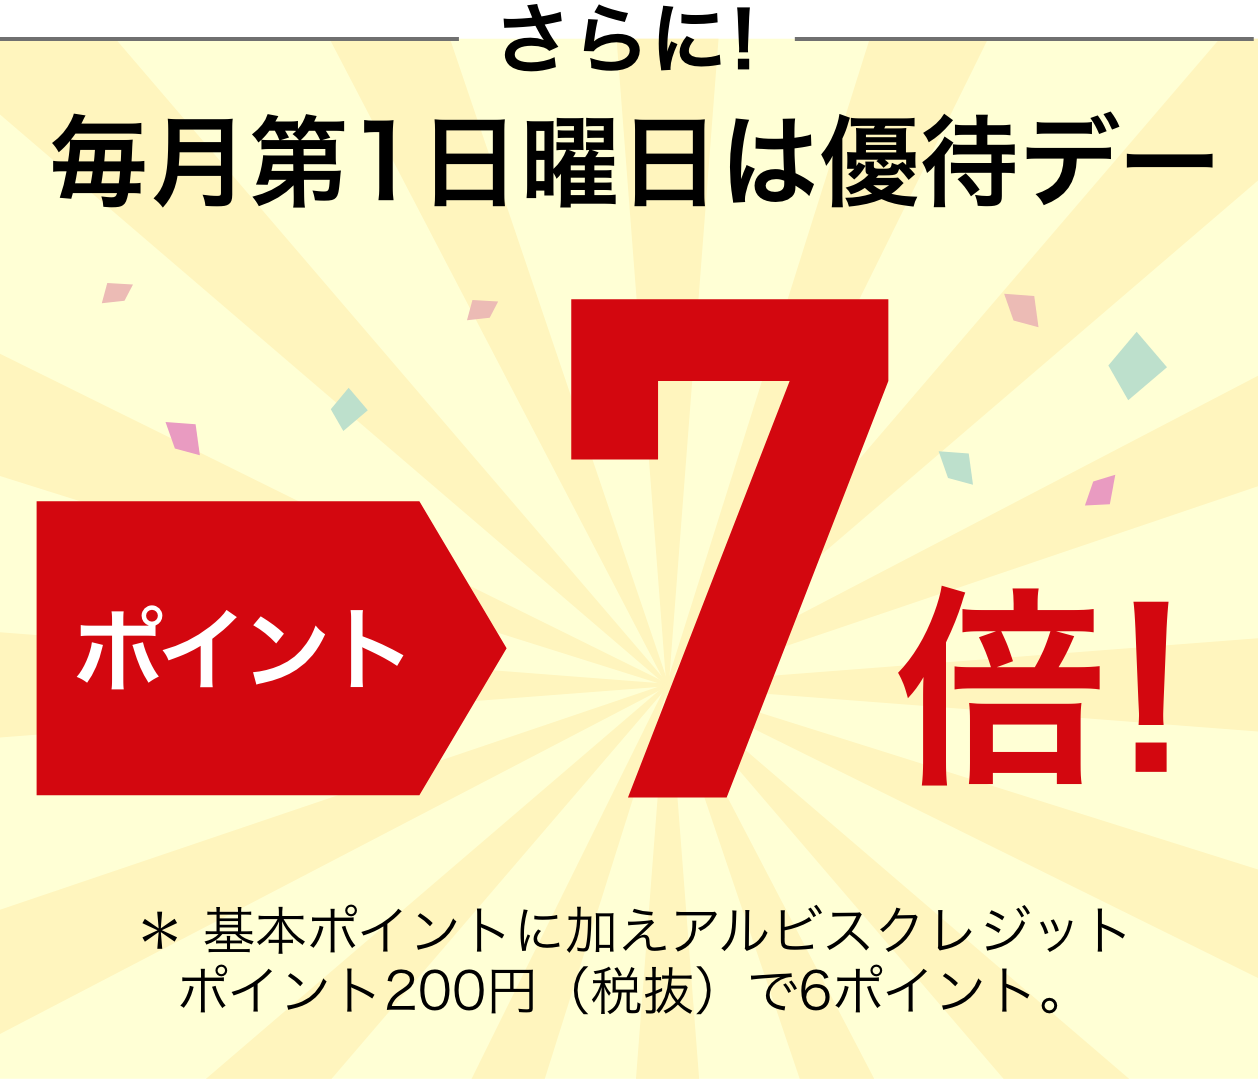 さらに毎月第1日曜日は優待デーポイント7倍 ＊ 基本ポイントに加えアルビスクレジットポイント200円（税抜）で6ポイント。